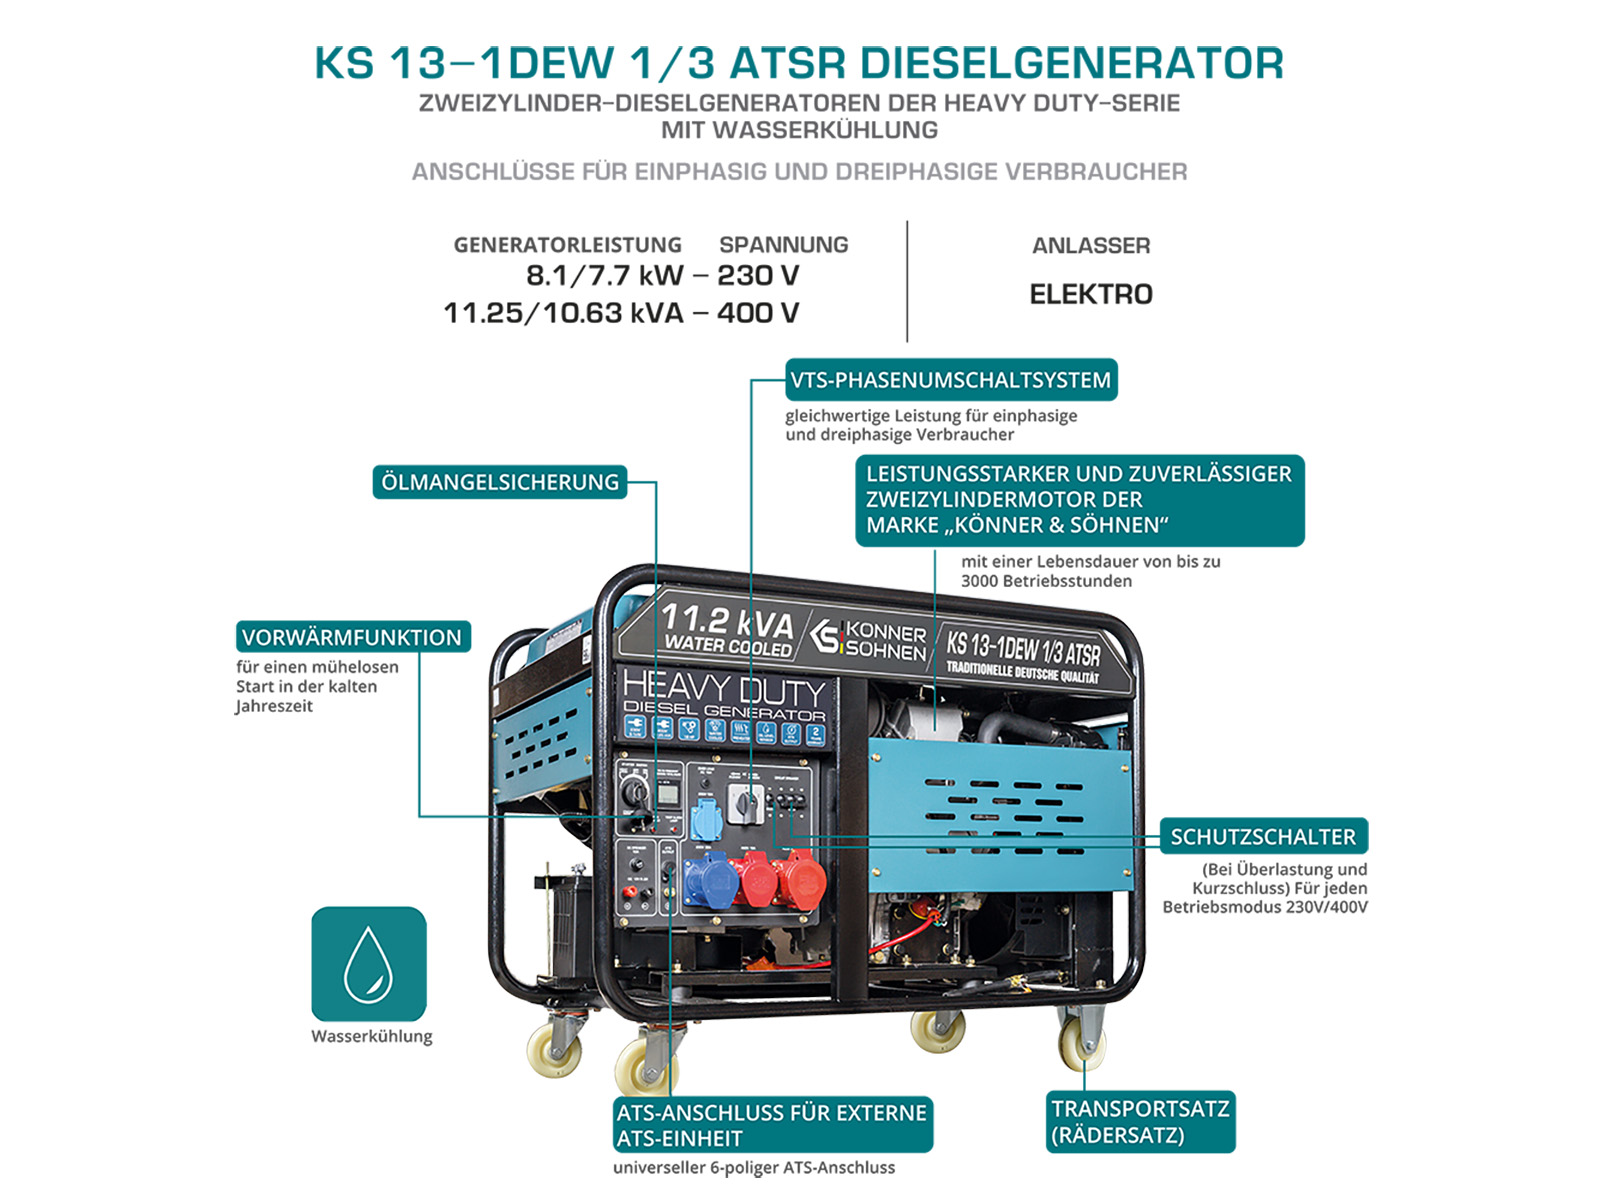 Diesel-Generator "Könner & Söhnen" KS 13-1DEW 1/3 ATSR